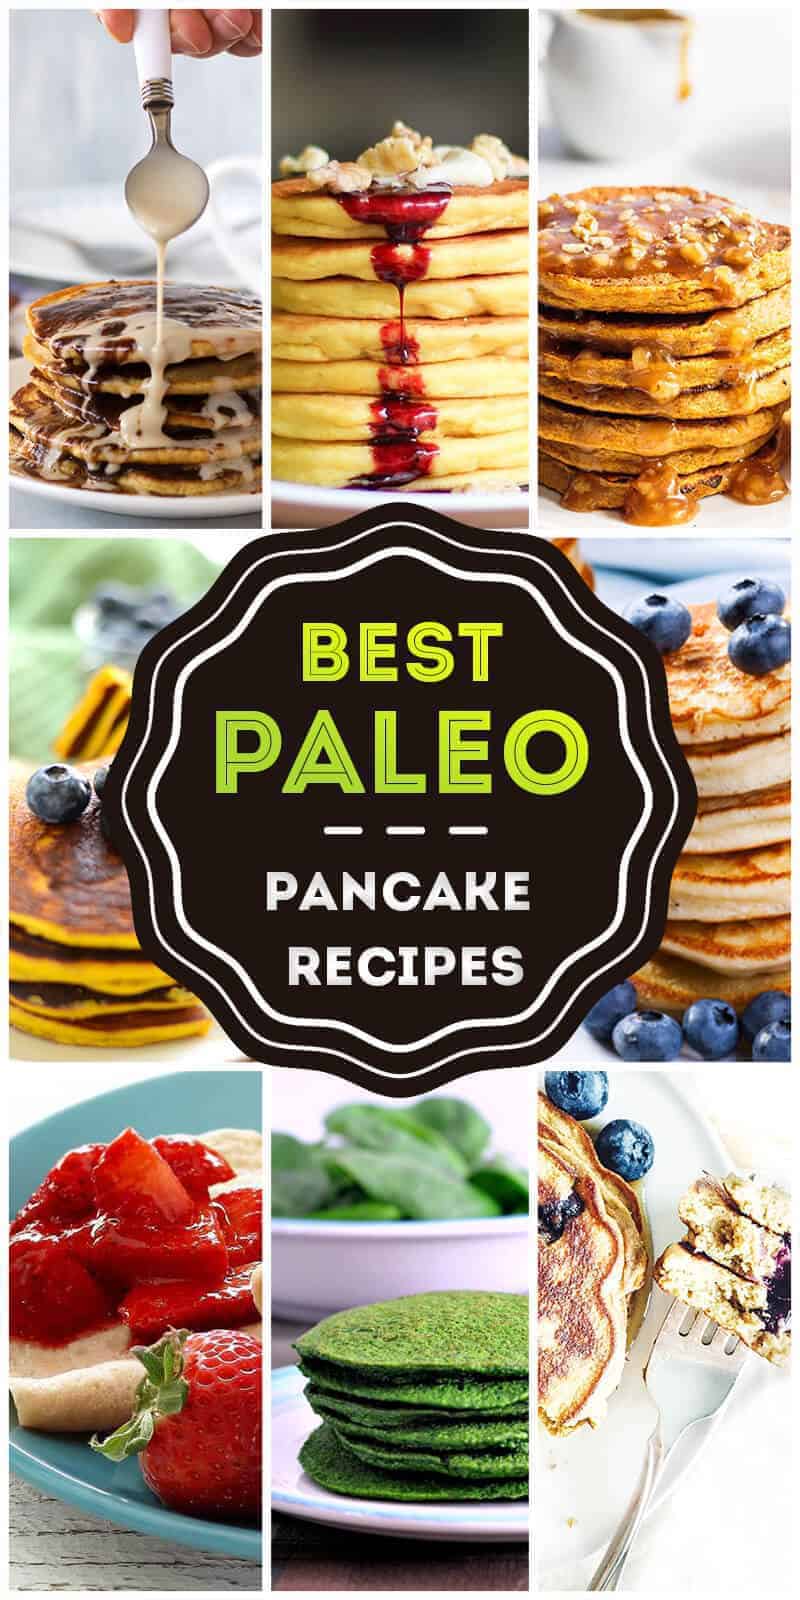 Top Paleo Pancake Recipes